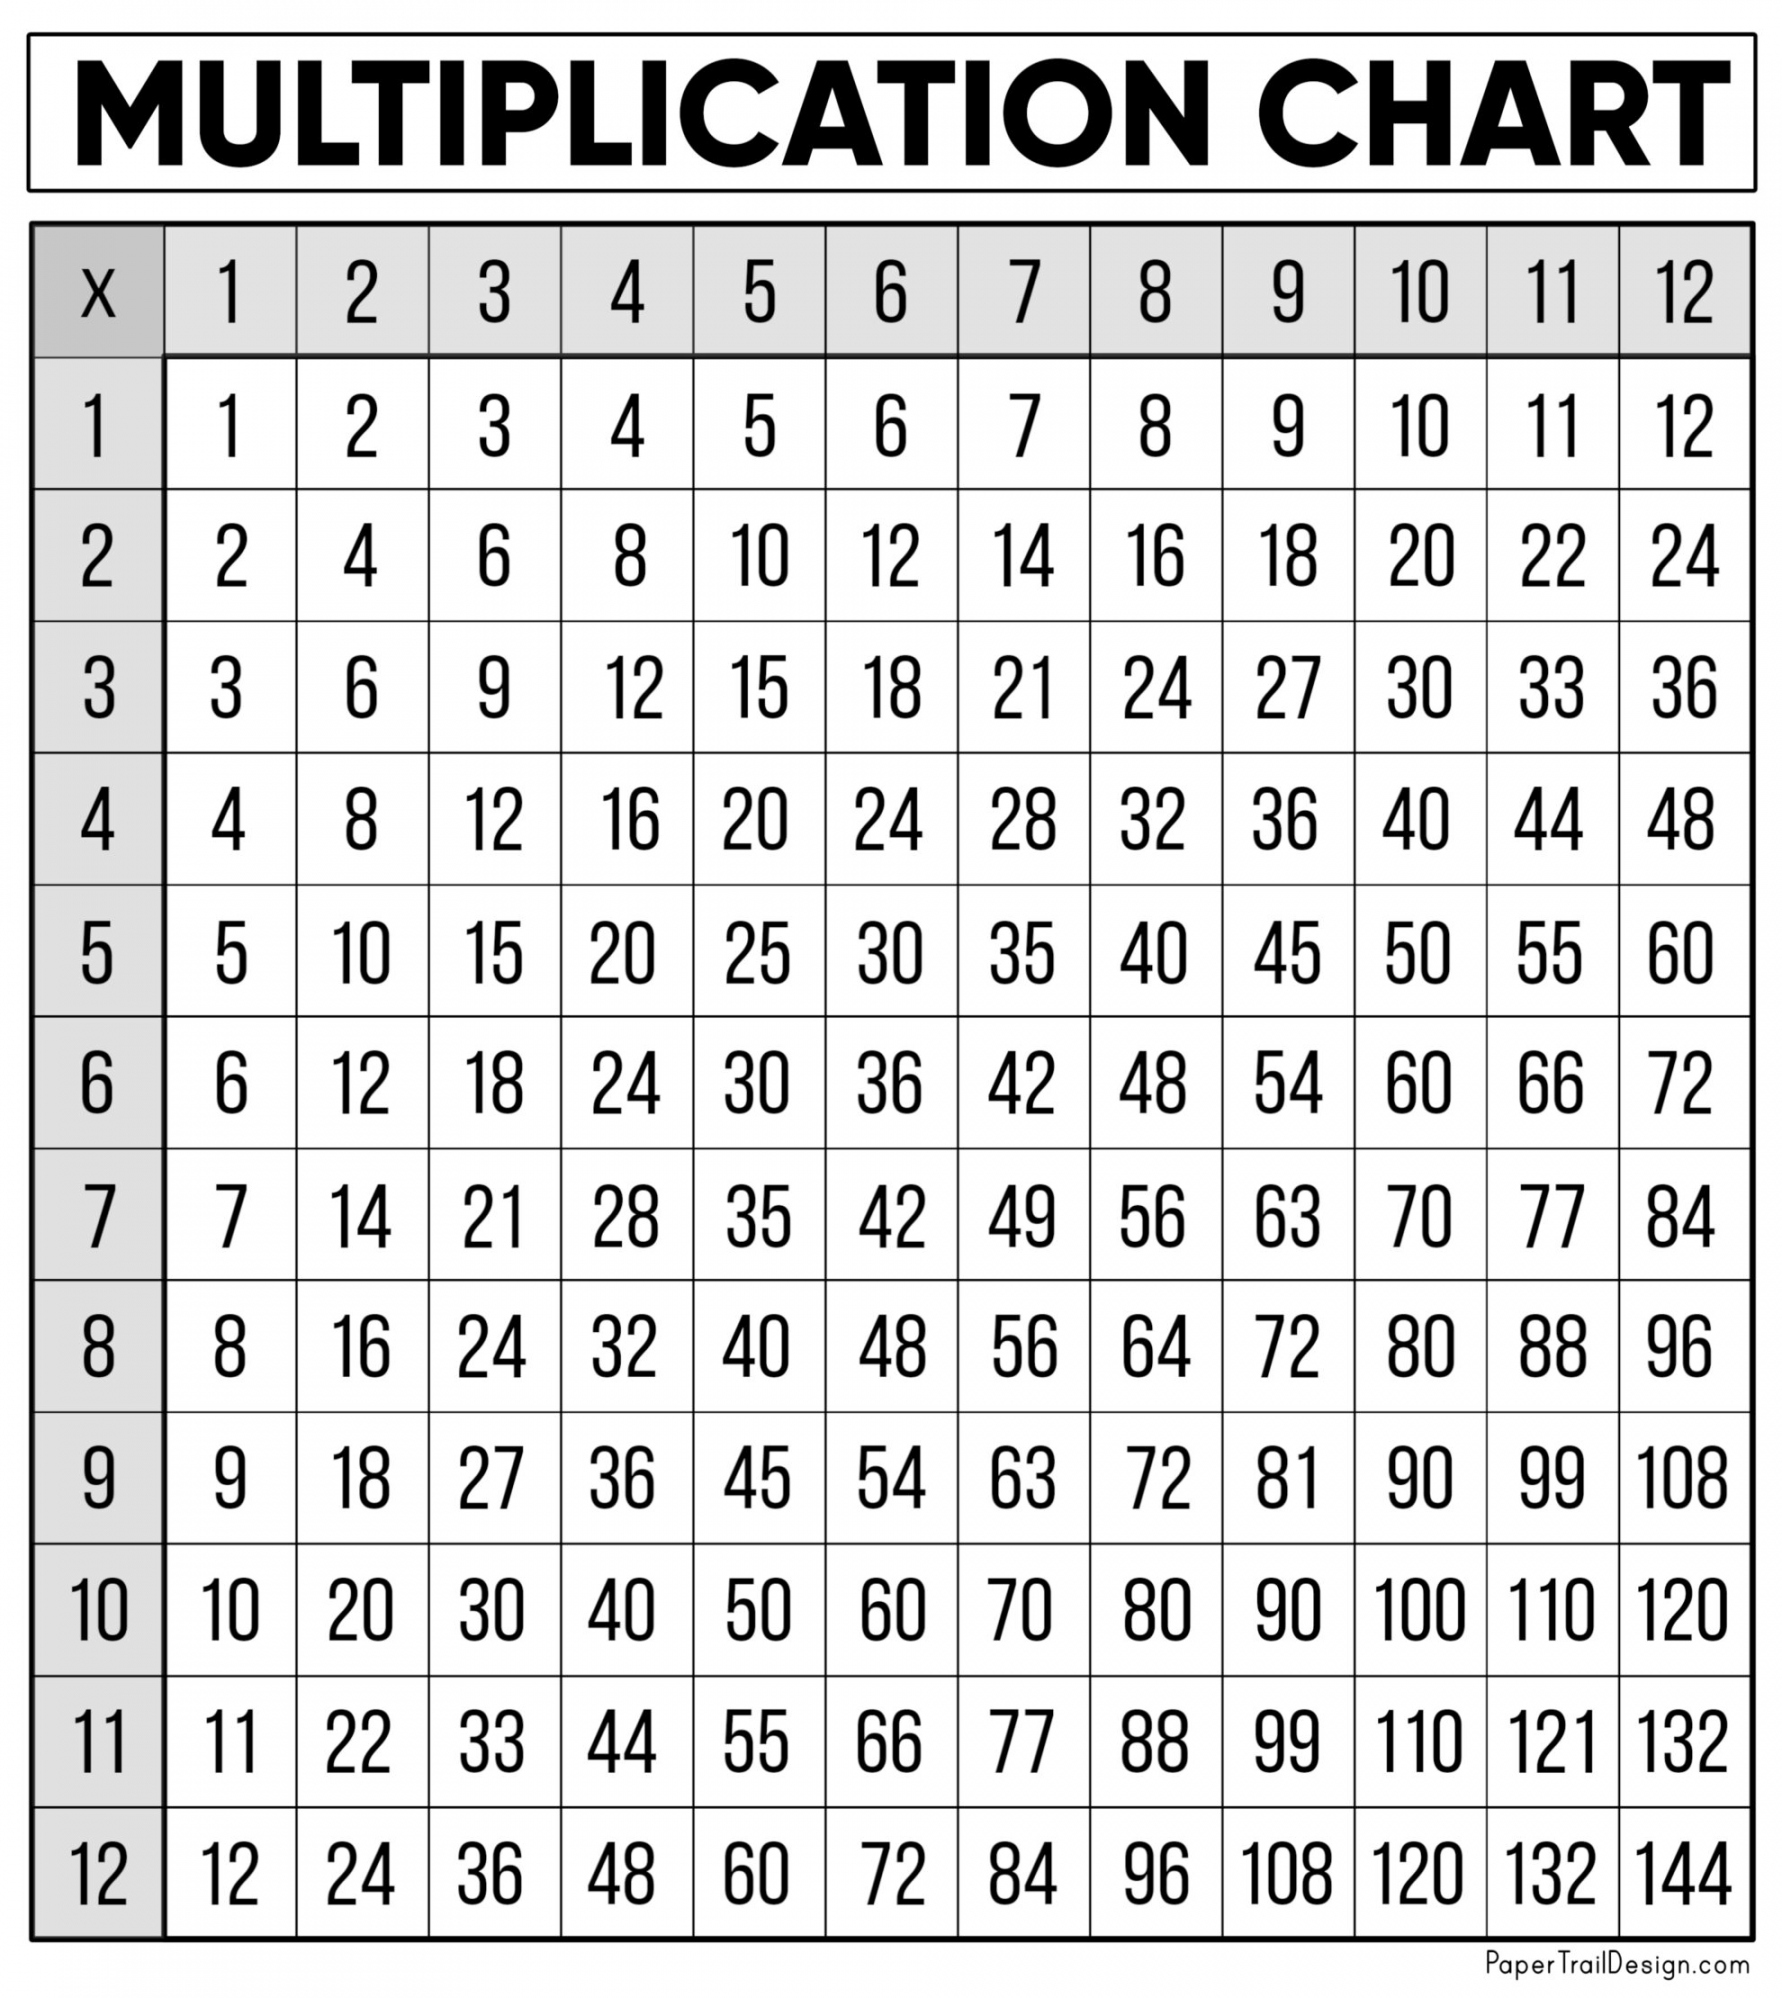 Free Printable Multiplication Chart - Printable - Free Multiplication Chart Printable - Paper Trail Design